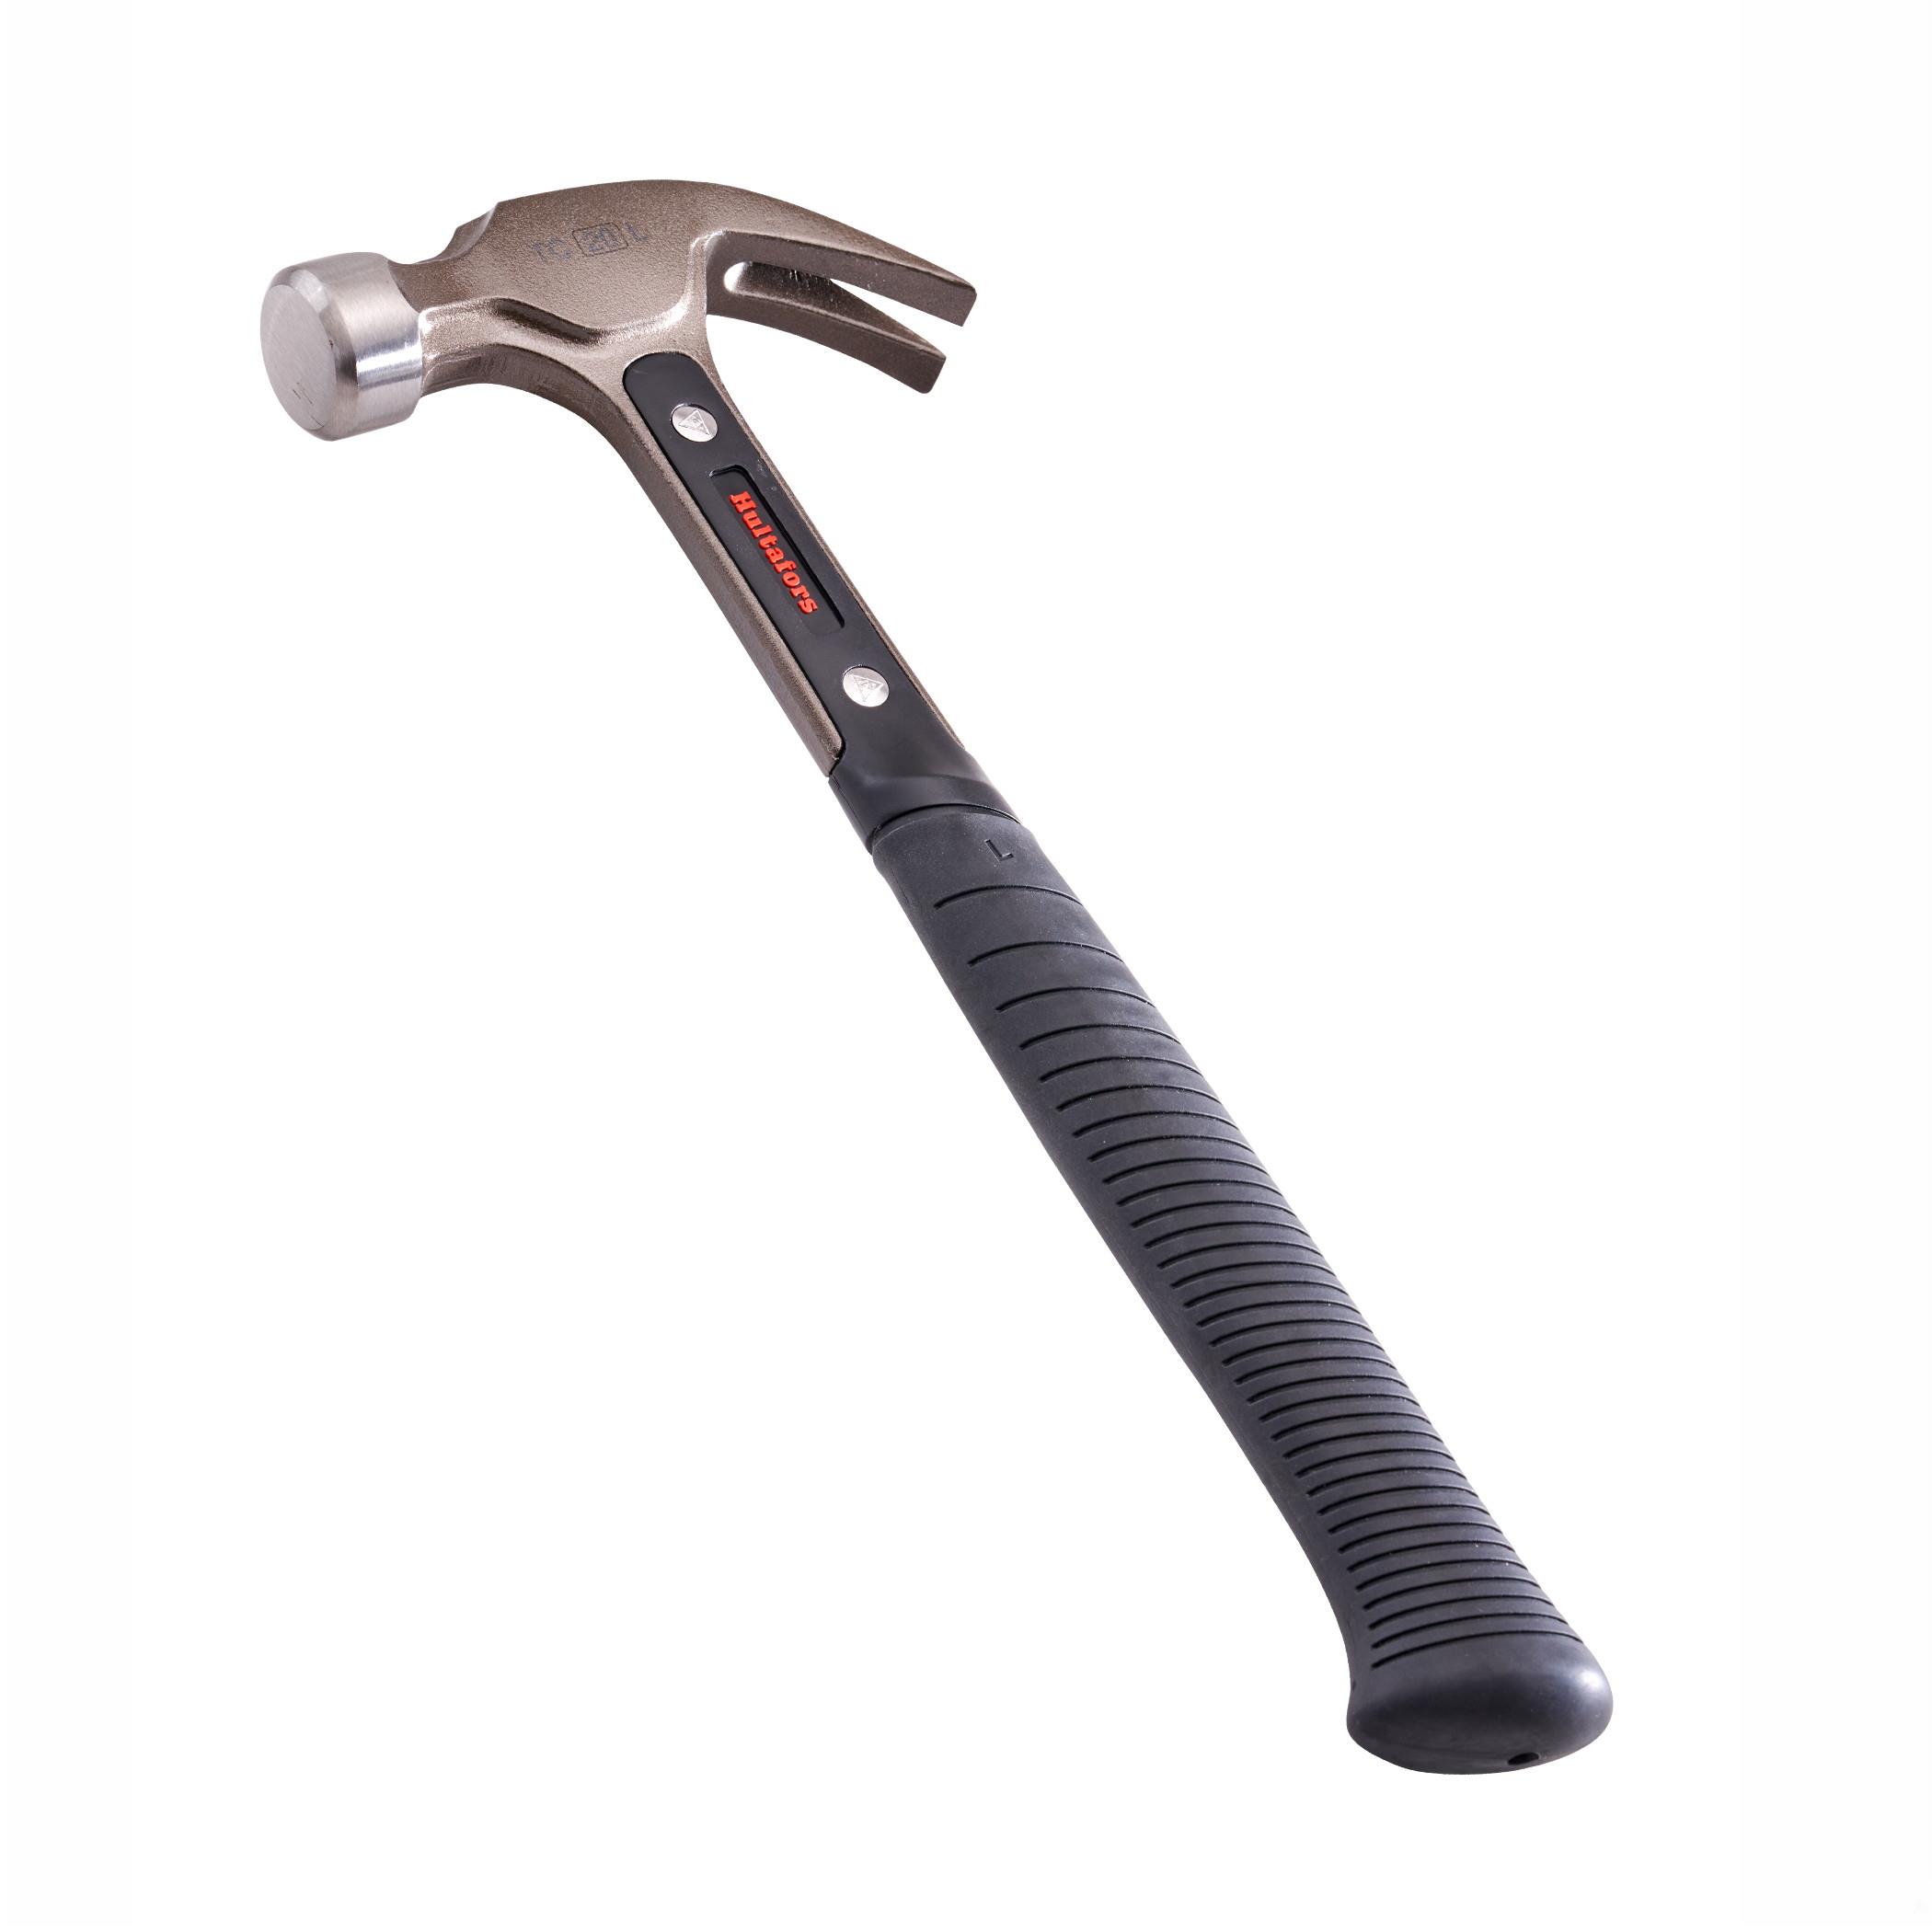 Hultafors 820130 TC 20L Curved Claw Hammer; 567g (16 oz)